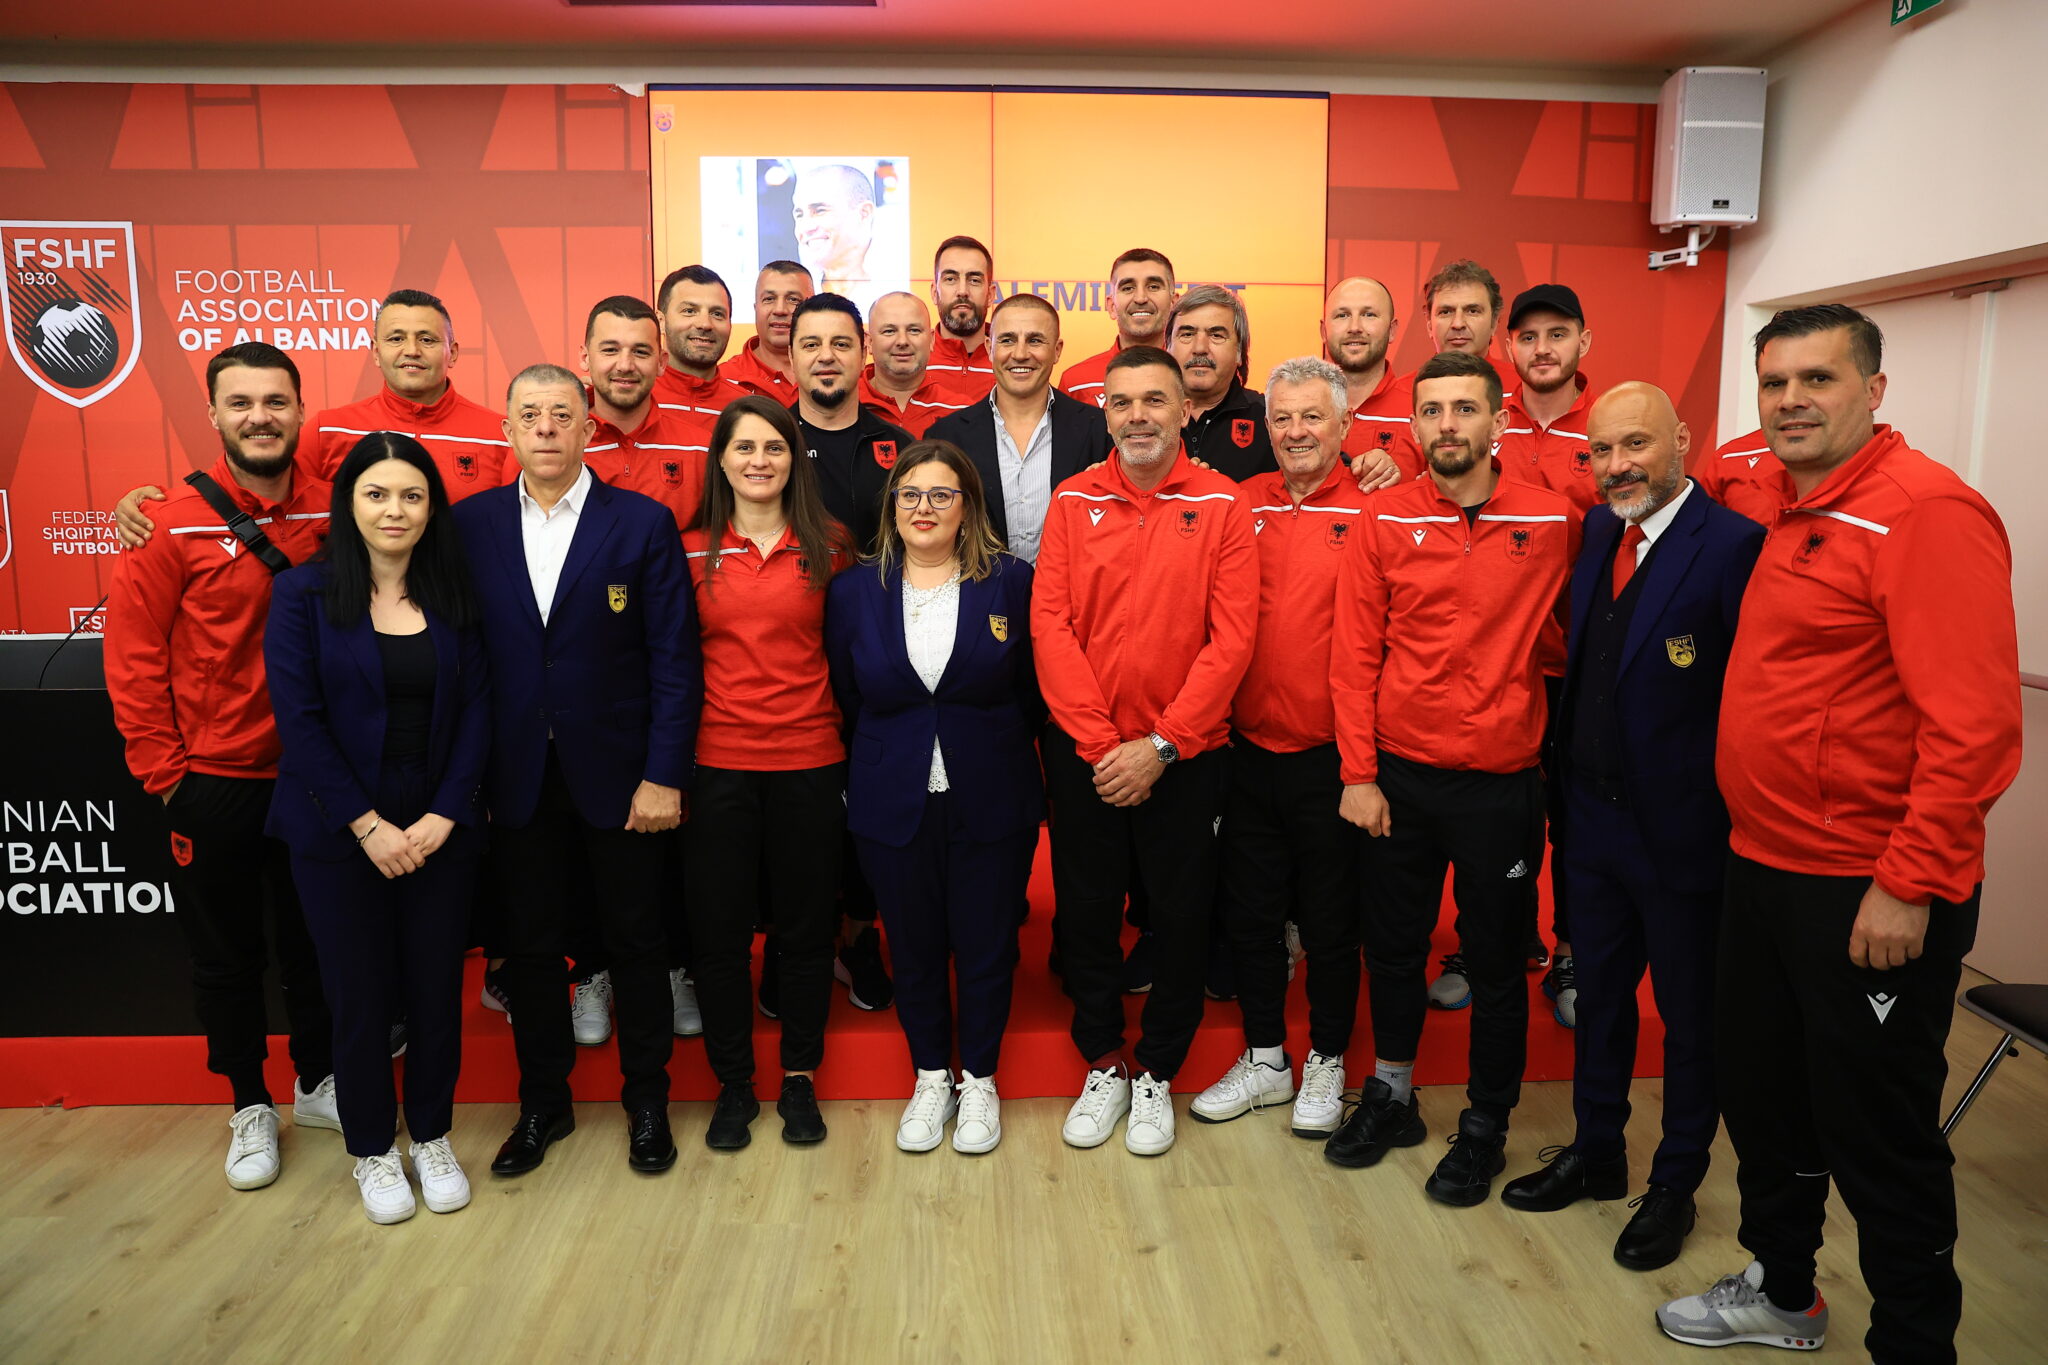 fabio cannavaro shqiperia skuader e forte dhe qe luan me pasion populli me siguri eshte krenar